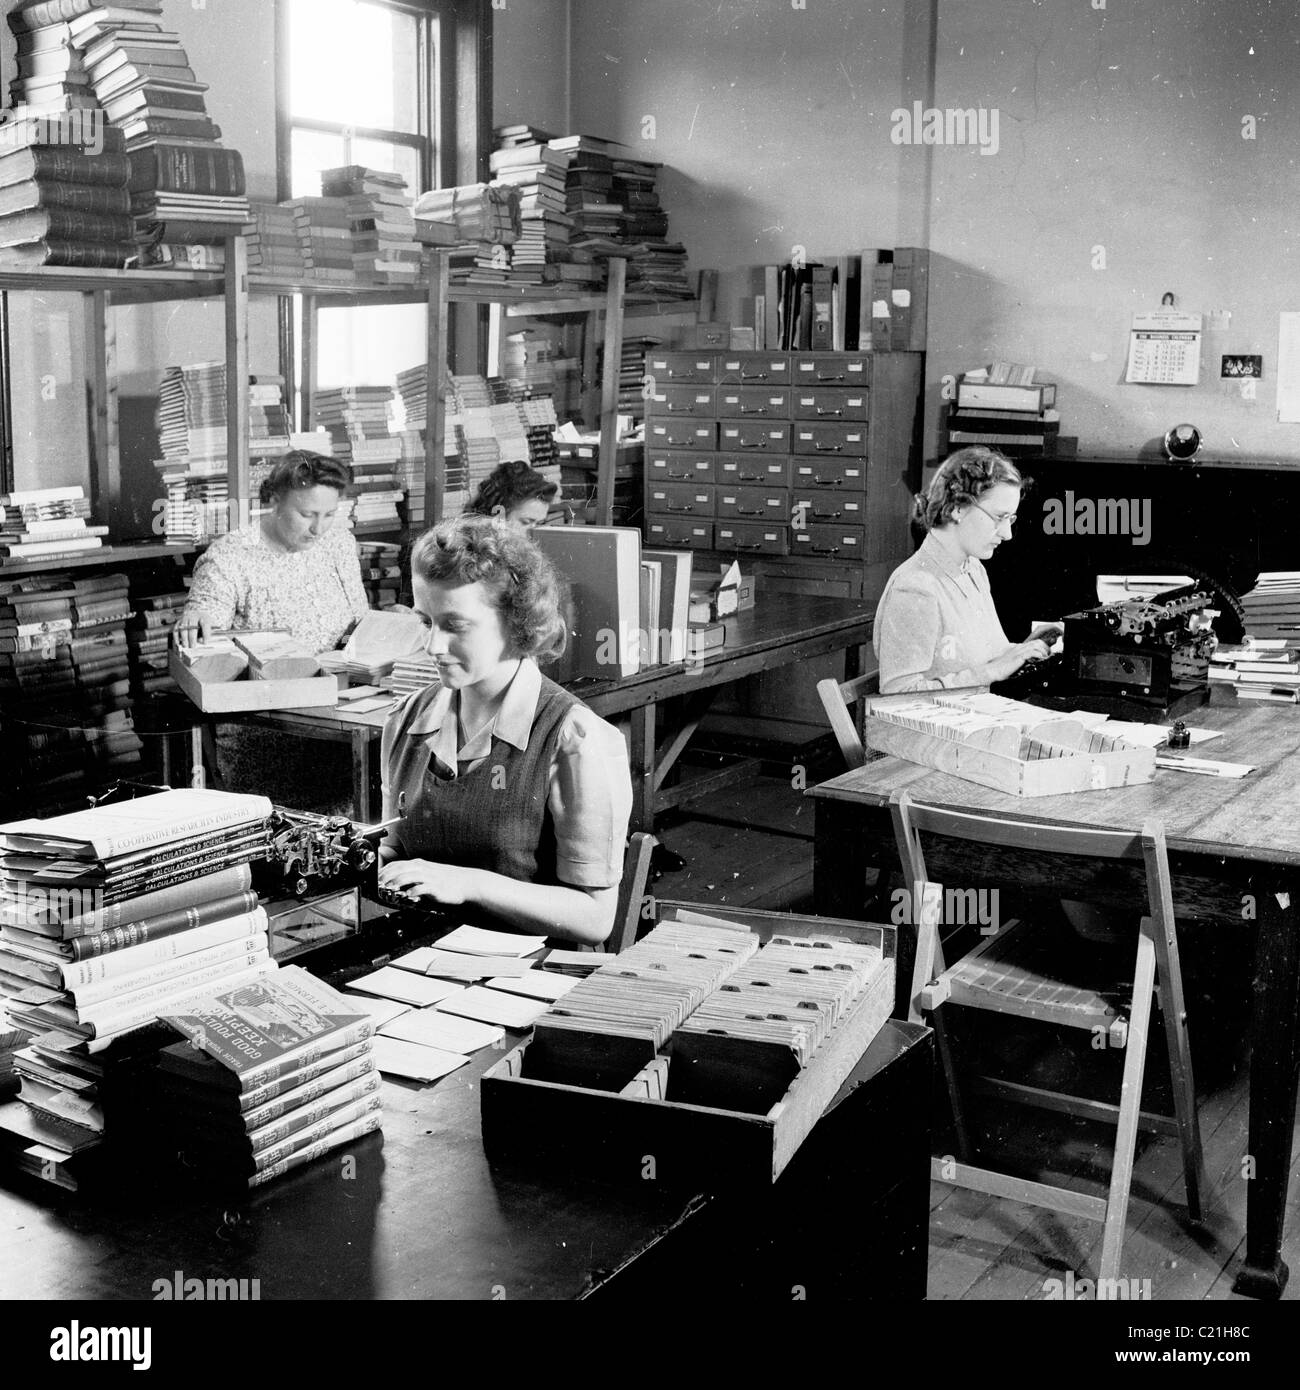 England der 1950er Jahre. Sekretärinnen arbeiten bei Schreibmaschinen in einem Büro von einem Verlag in diesem historischen Bild von J Allan Cash. Stockfoto